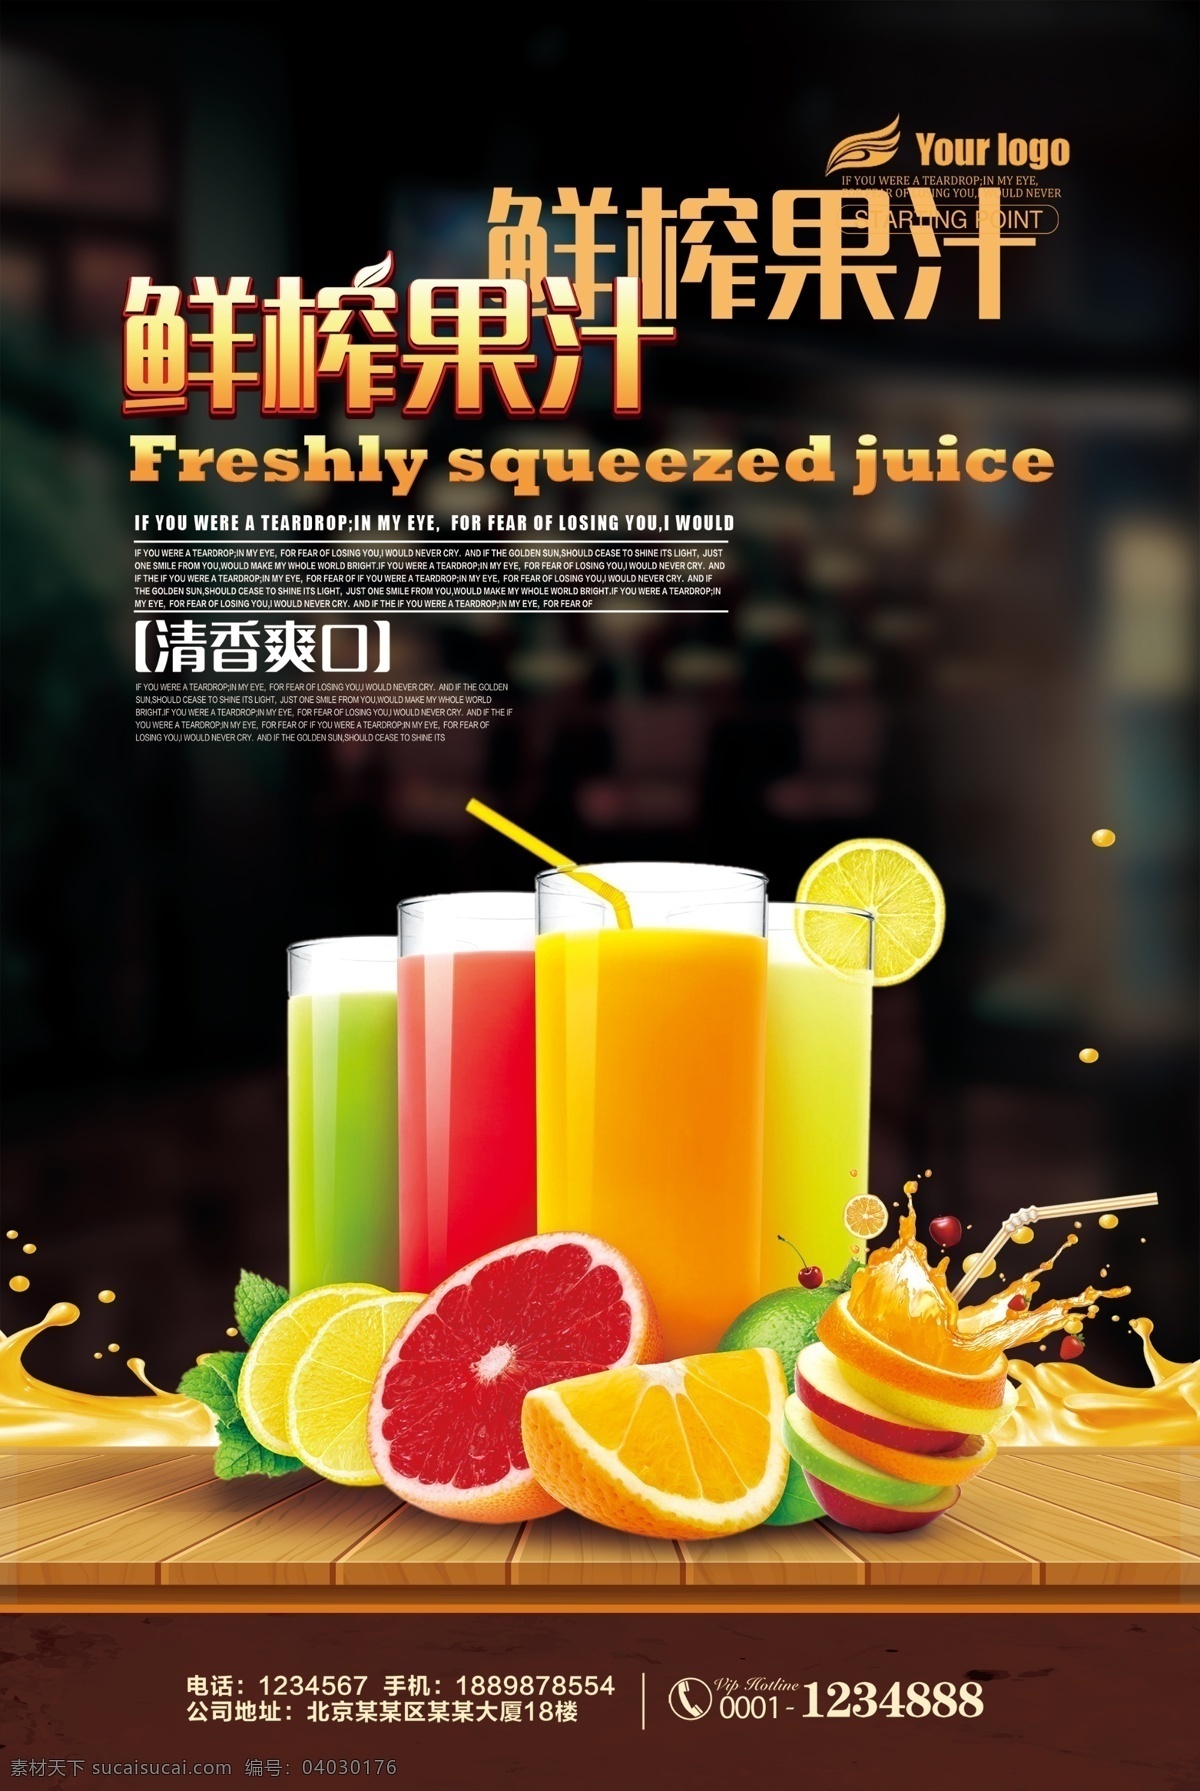 果汁海报图片 鲜榨果汁 果汁海报 饮料海报 果汁饮料 鲜榨果汁饮料